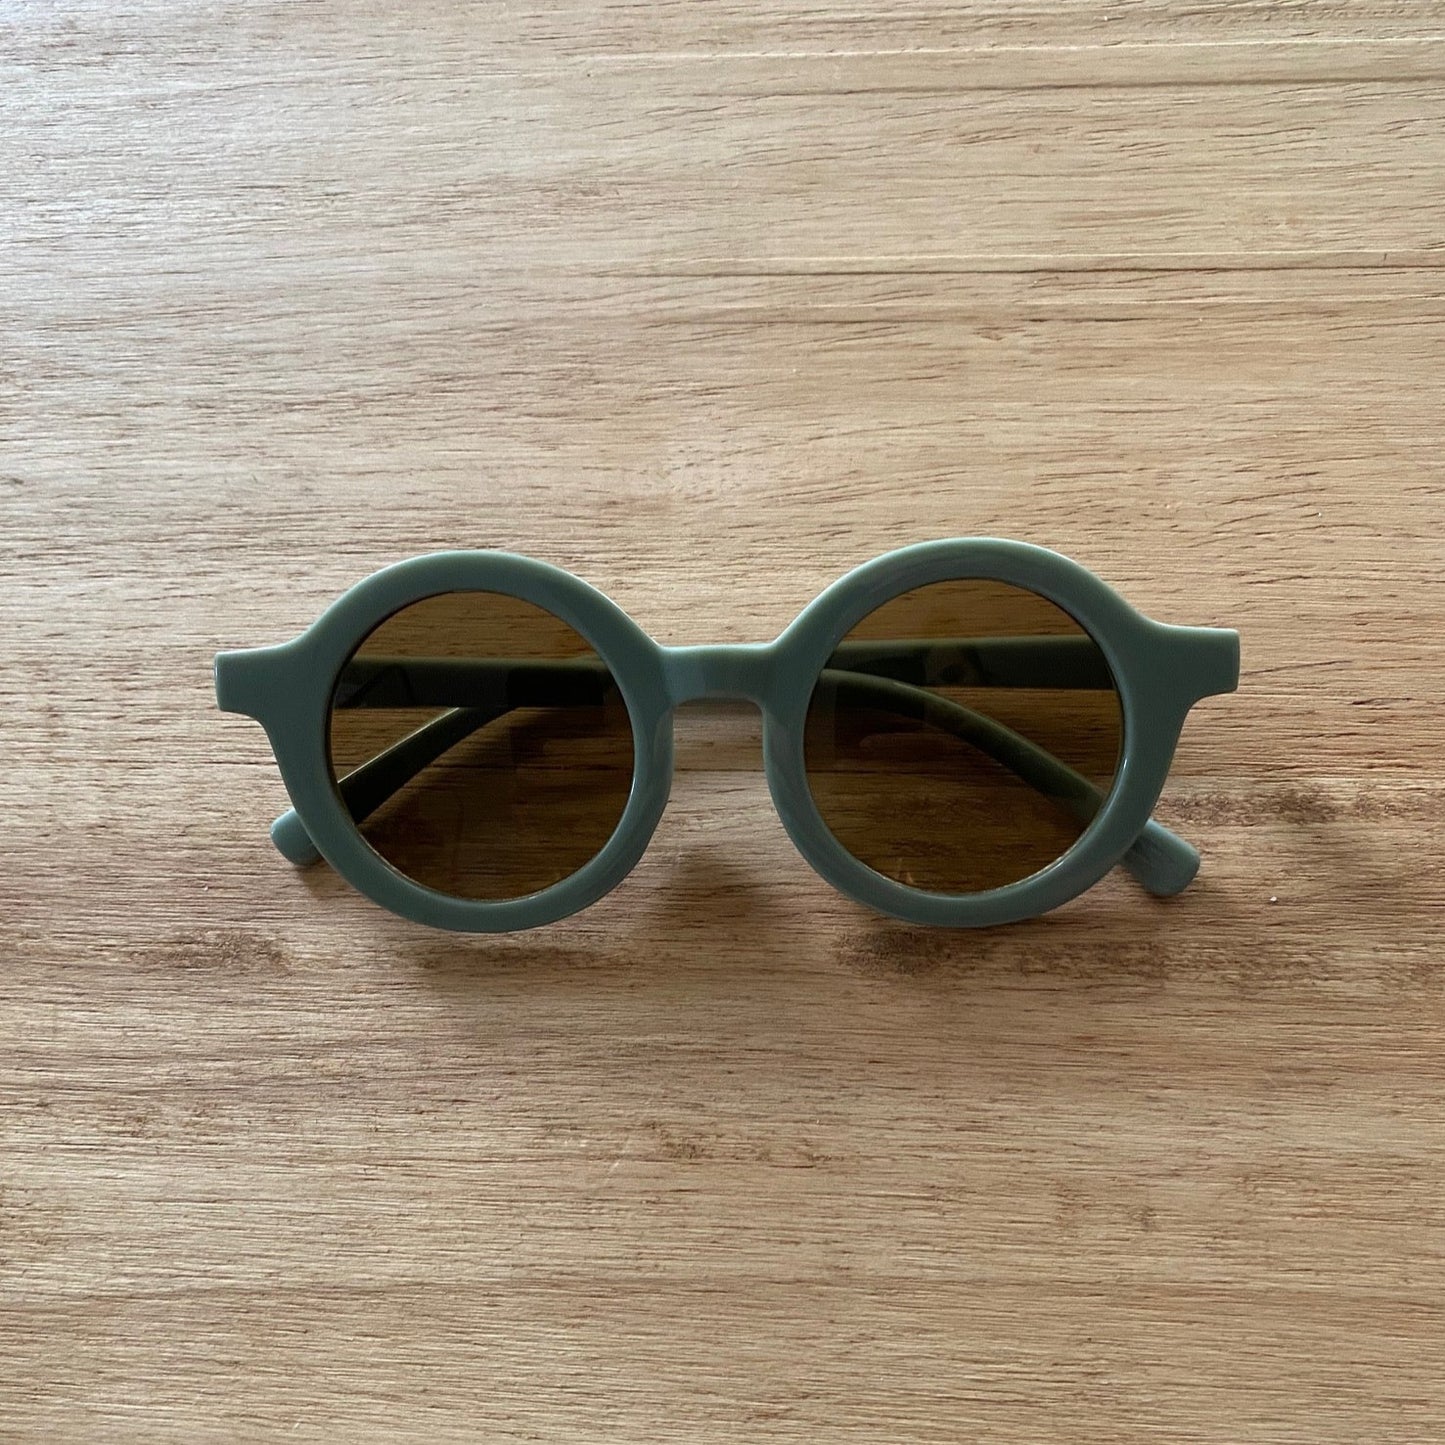 The Retro Sunglasses